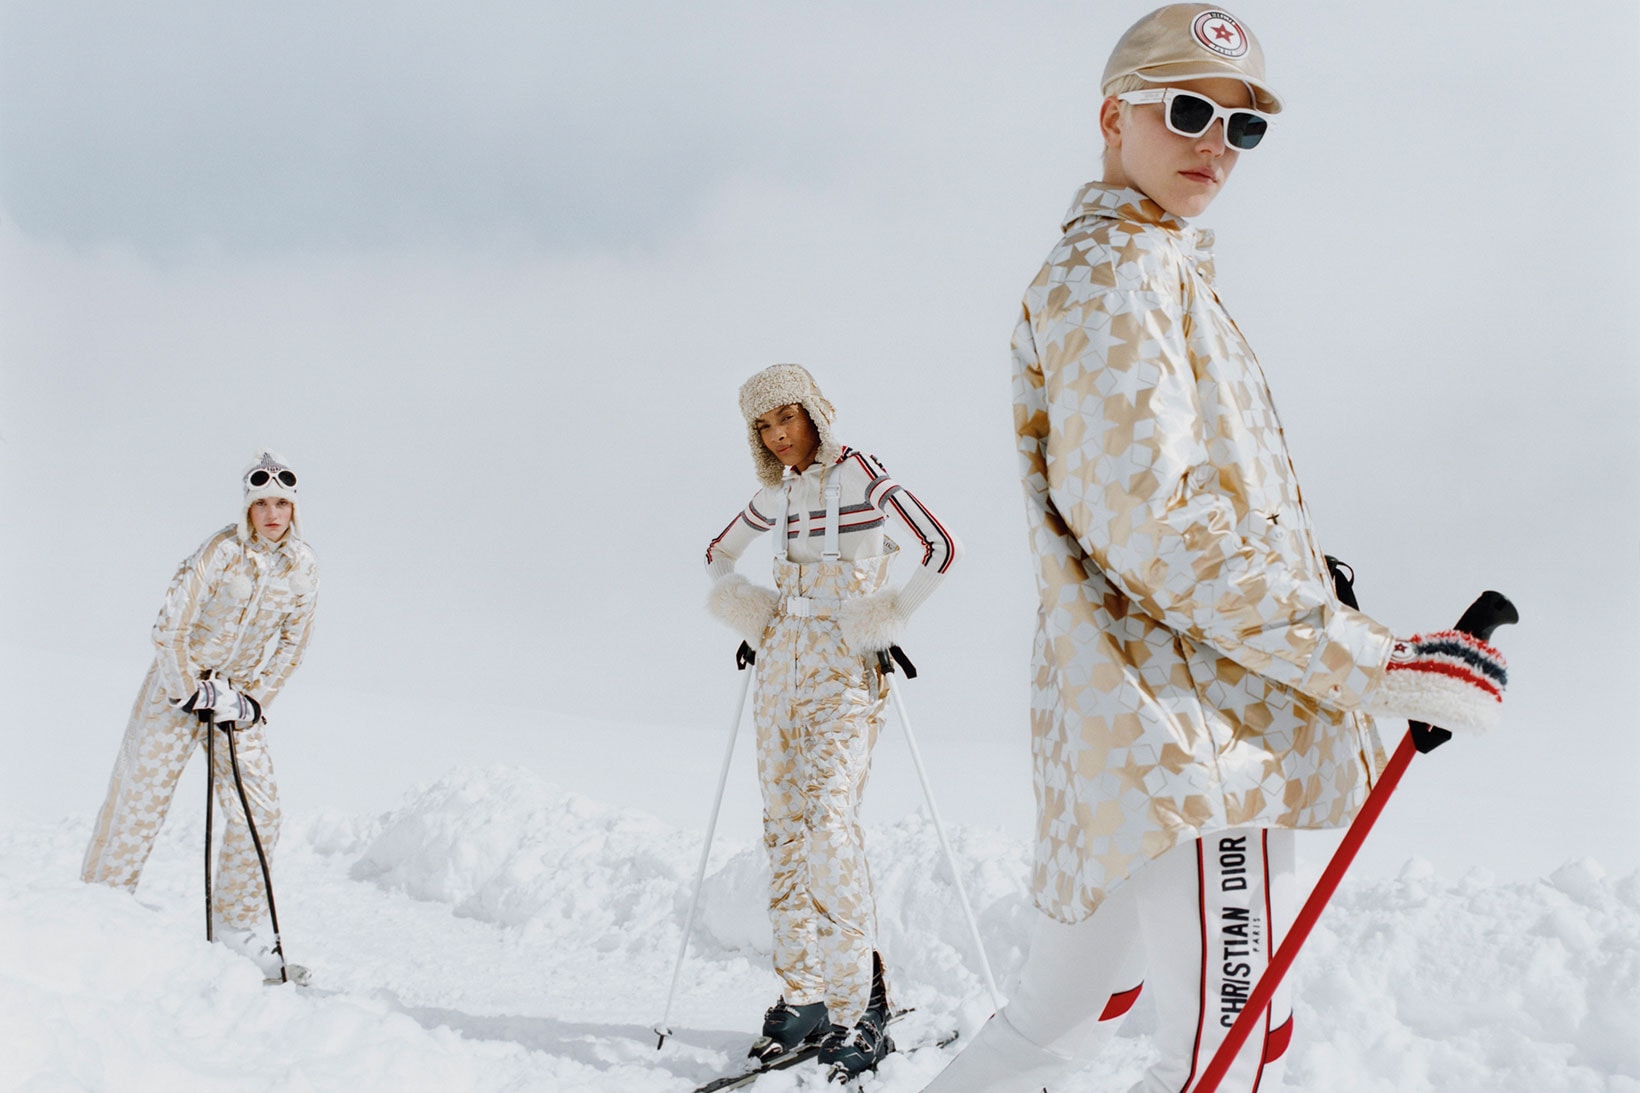 DiorAlps Ski Capsule Snow Boots Goggles Maria Grazia Chiui Release Where to buy